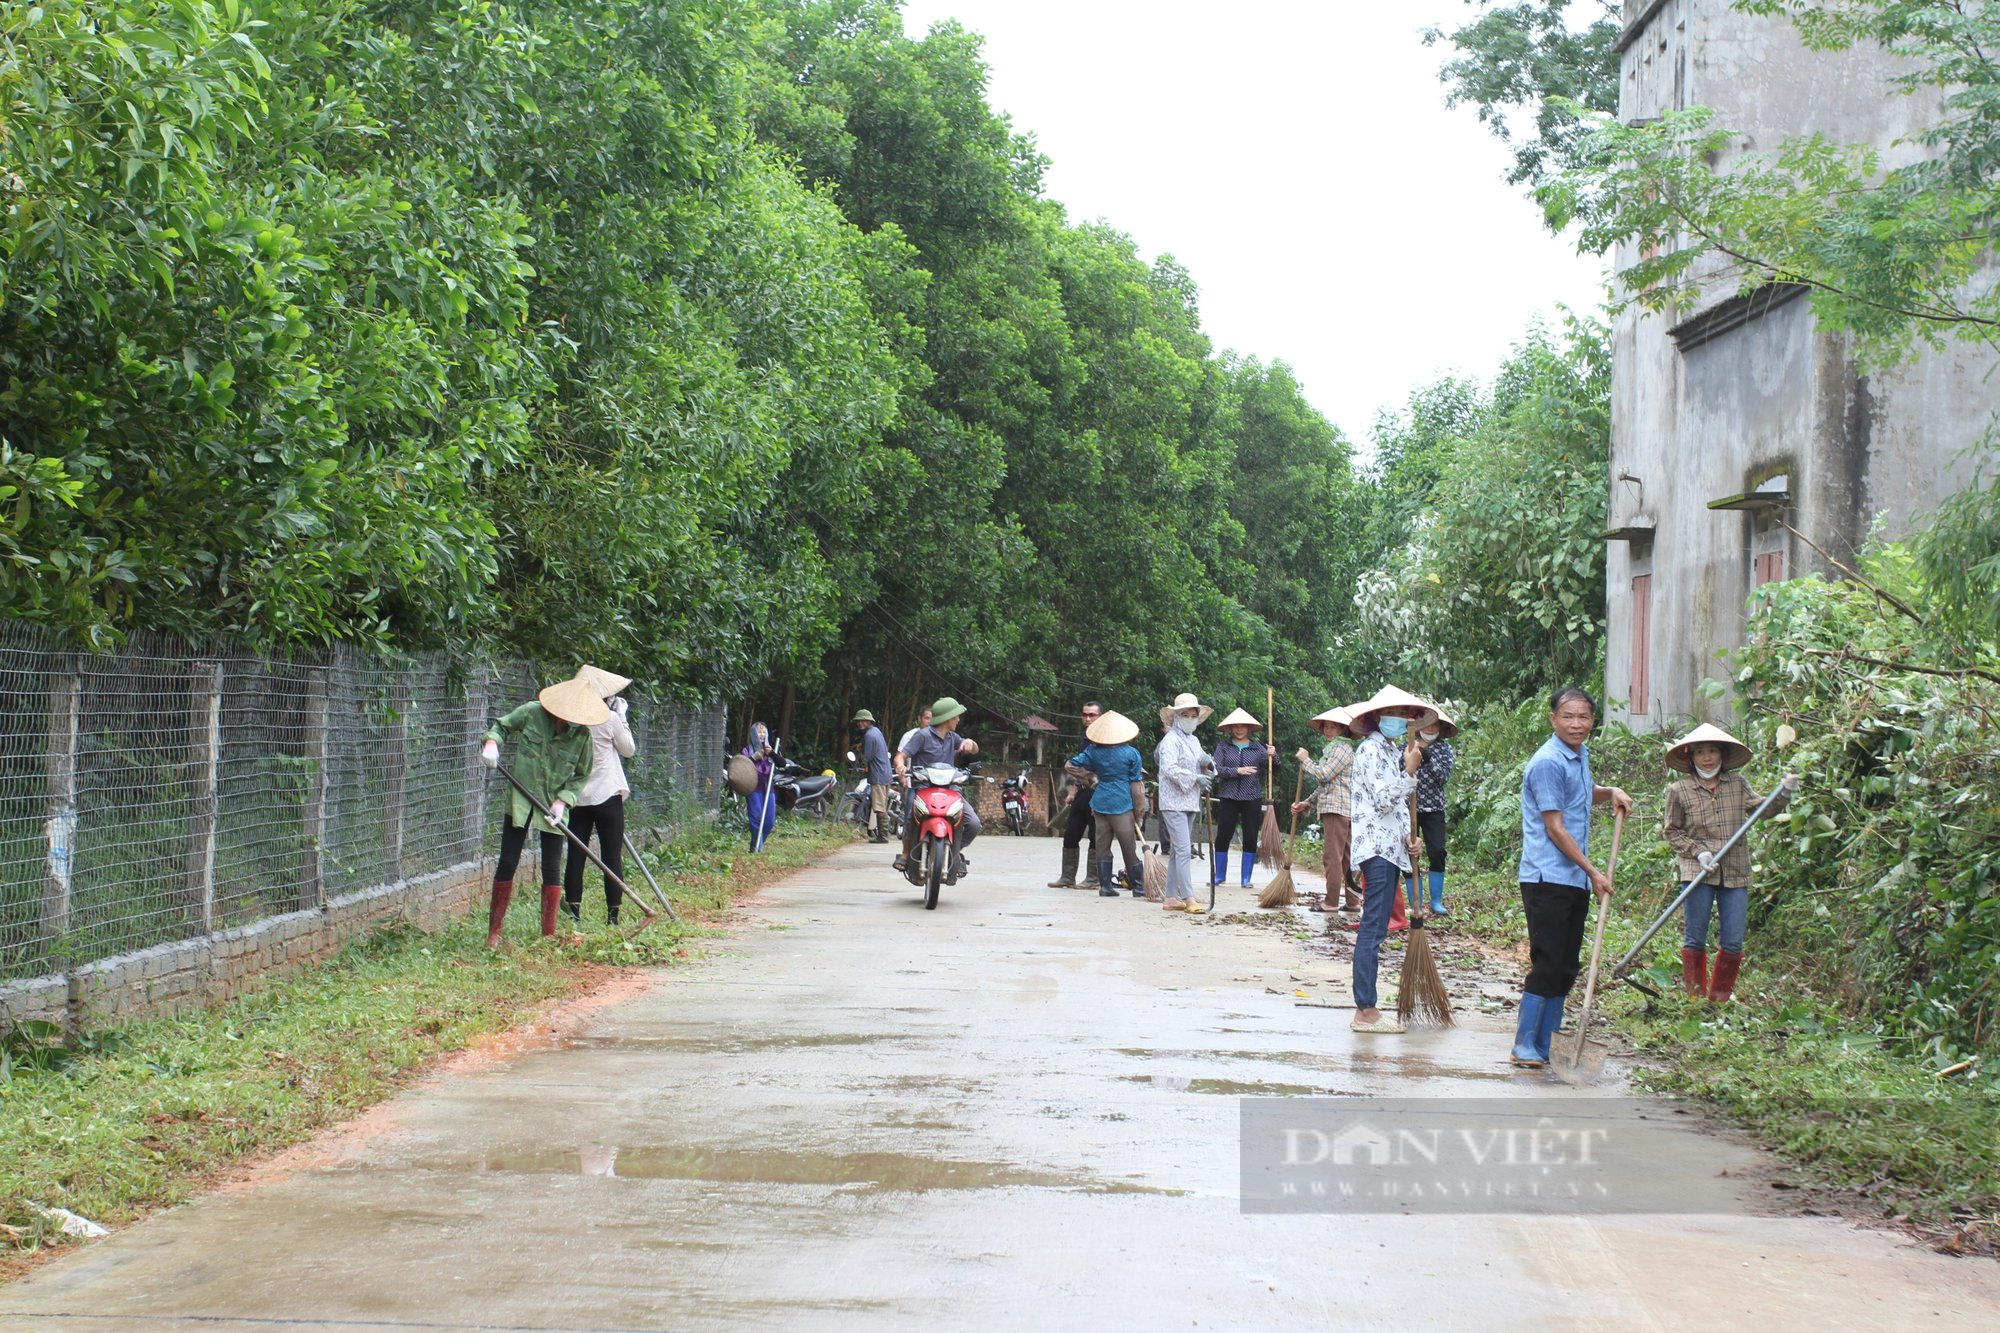 Phú Bình, Thái Nguyên: Hàng chục nghìn người ra quân vệ sinh môi trường, làm sạch đường làng, ngõ xóm, xây dựng nông thôn mới - Ảnh 2.